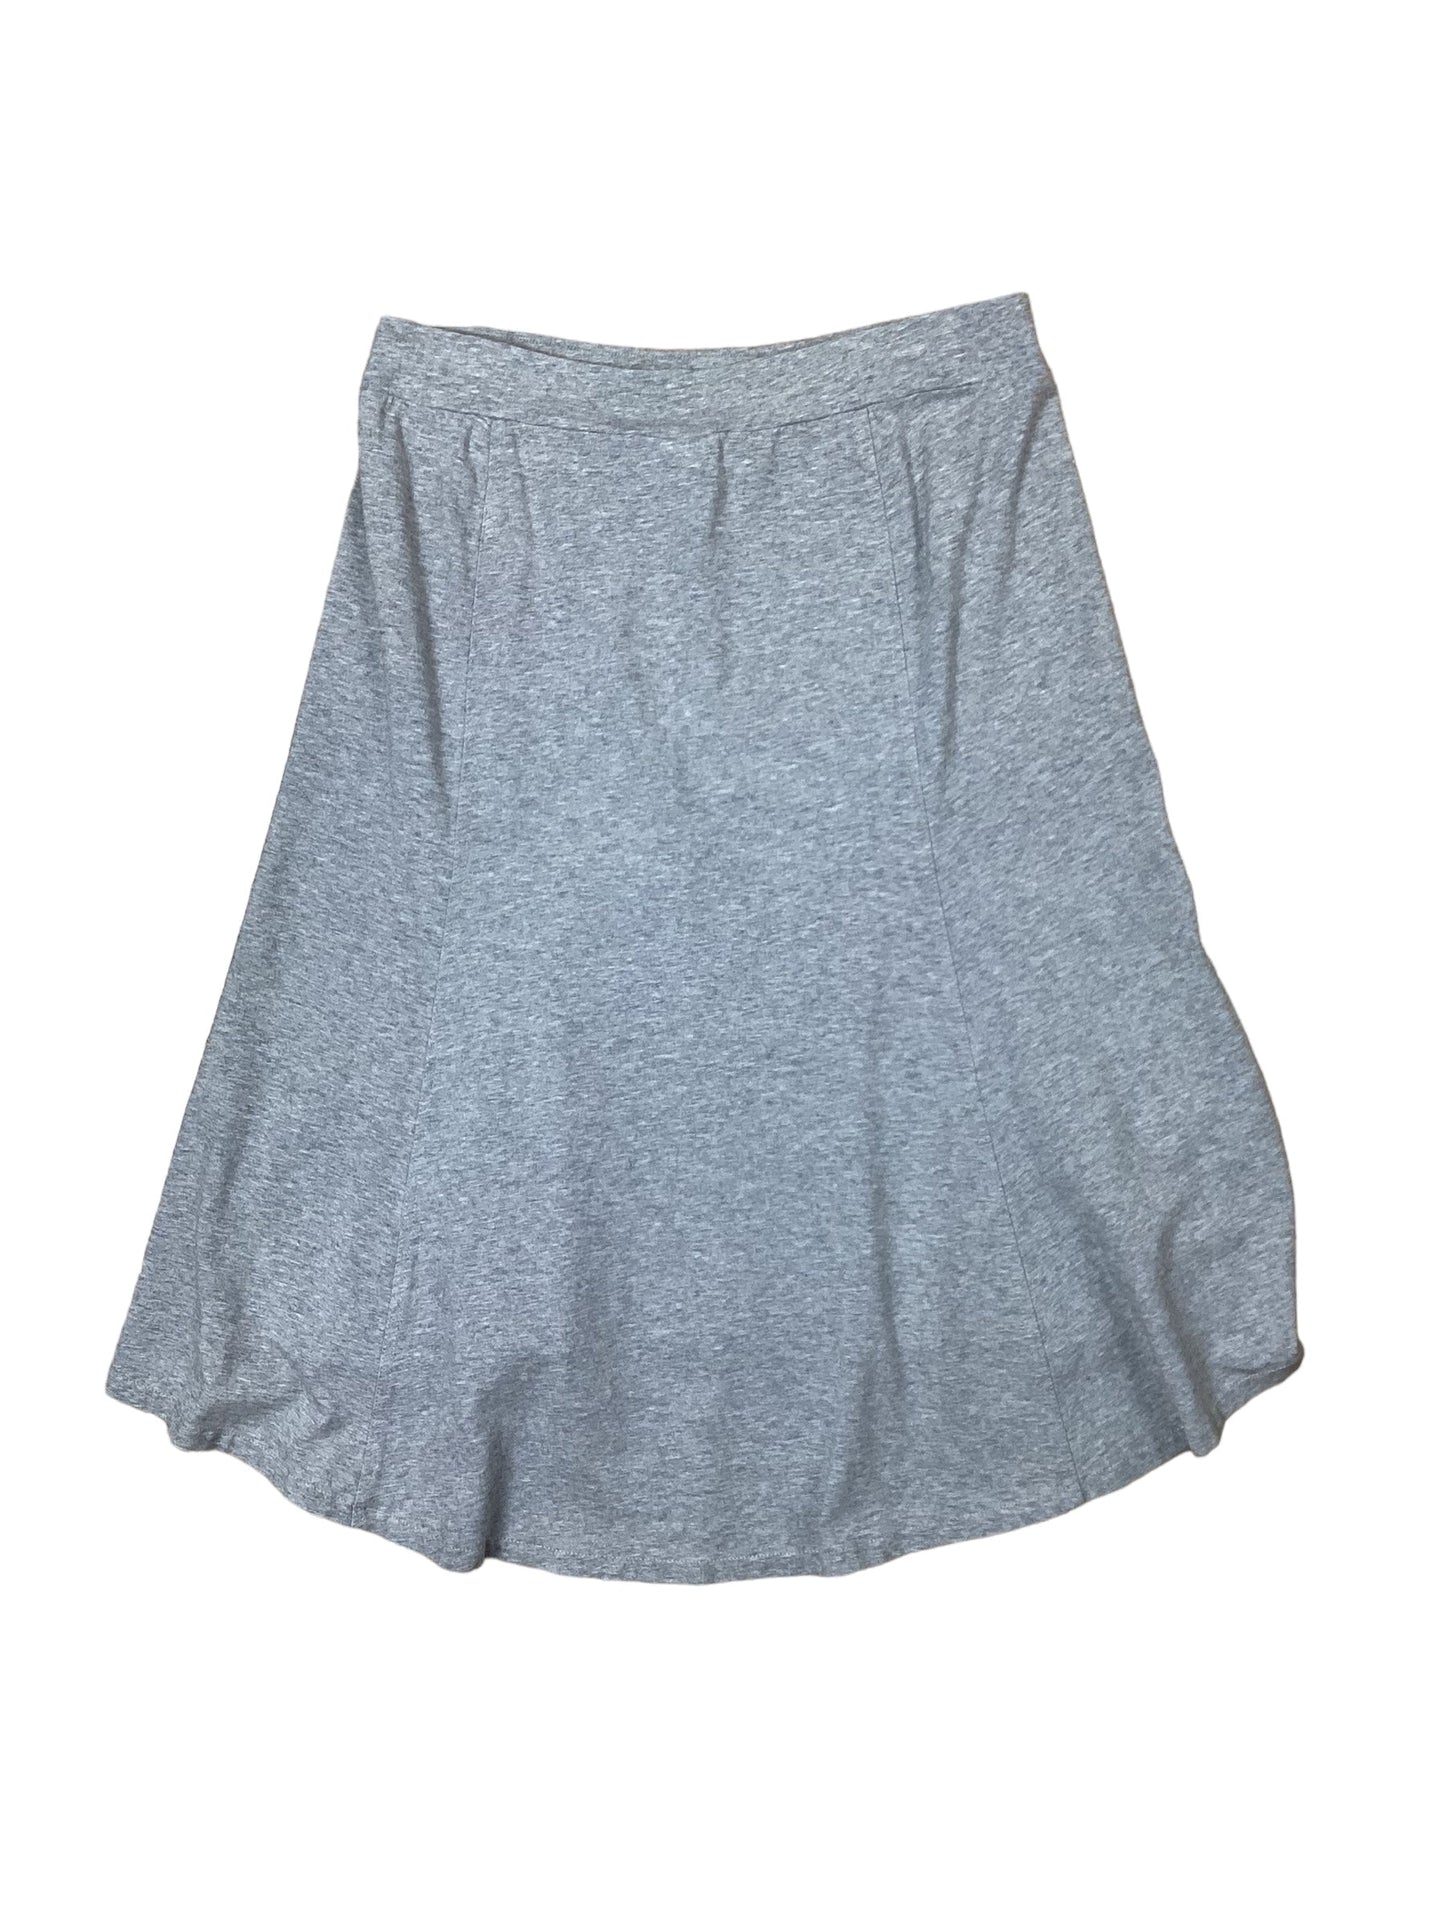 Grey Skirt Midi J. Jill, Size 10